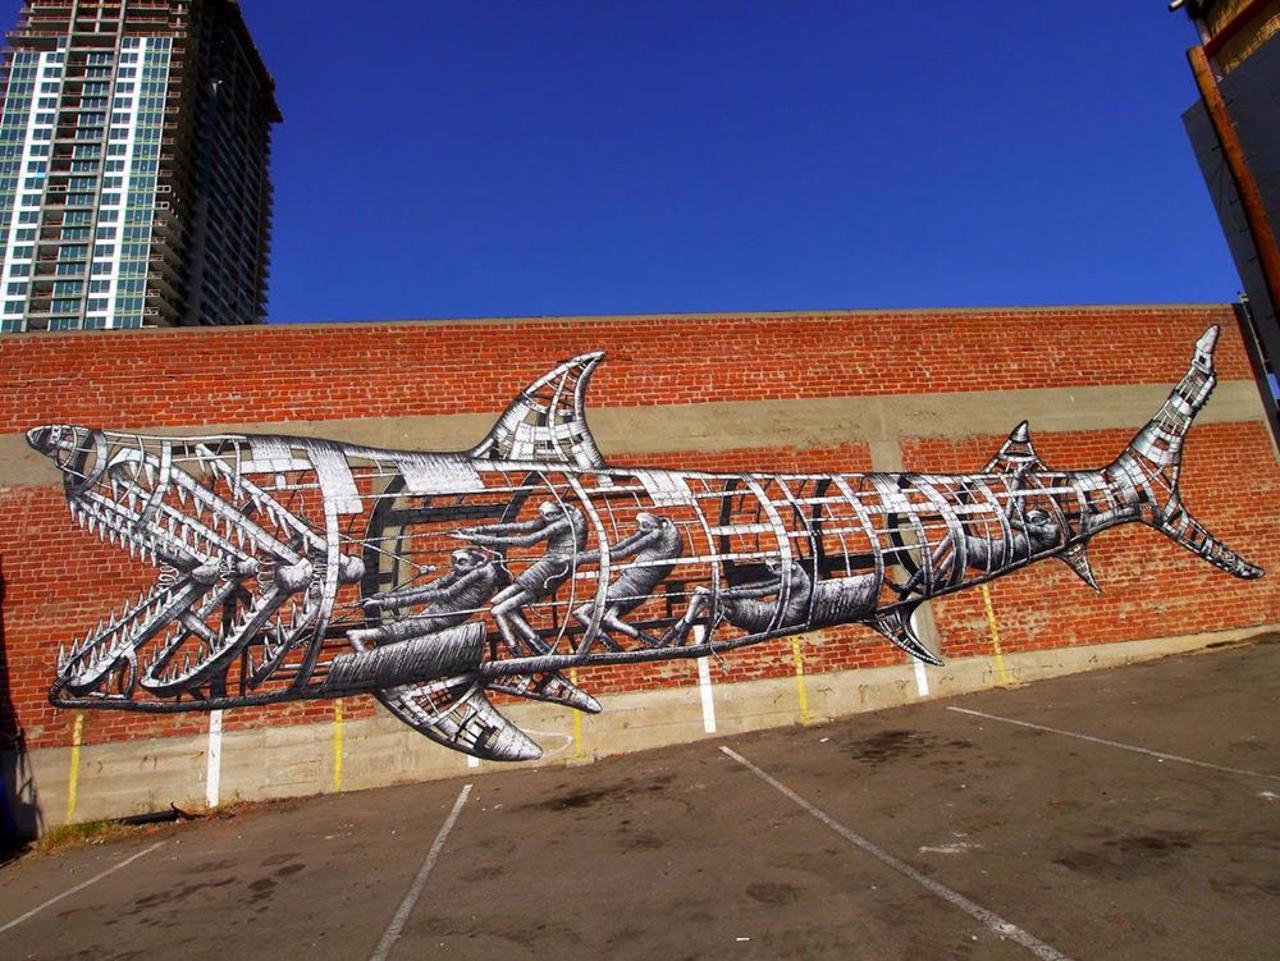 RT @HazelAddleyCoac: RT @DanielGennaoui Coolest mechanical shark mural. Check out more: http://buff.ly/1xsCQDL #graffiti #urbanart #artist http://t.co/Mmo8DcsJDs